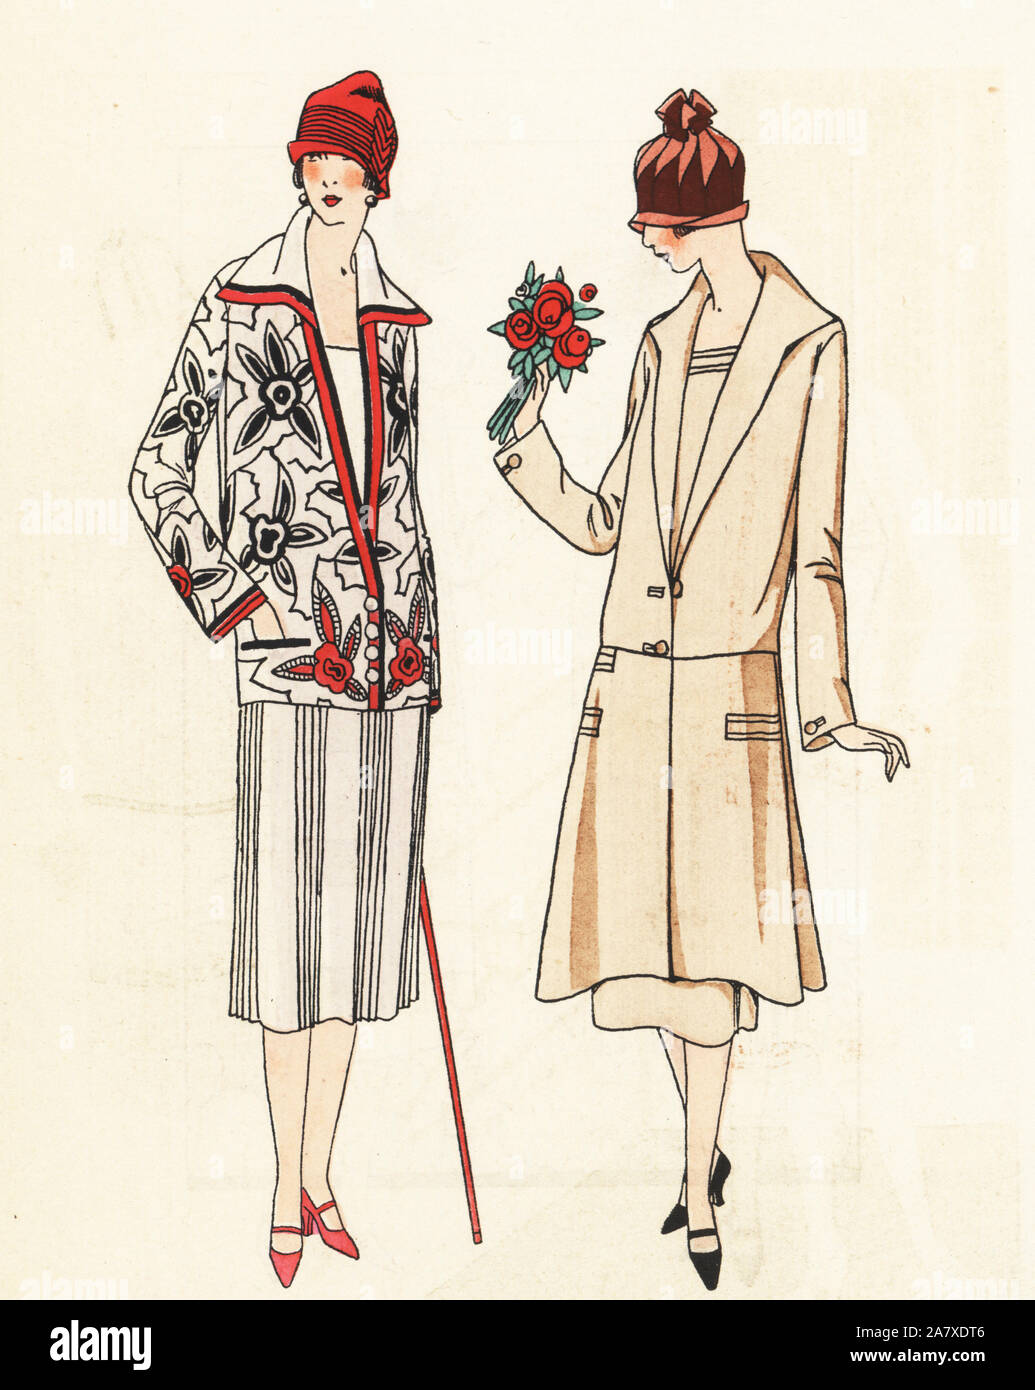 Frauen in Kleidung und dreiteiligen Anzug. Papierkörbe pochoir (Schablone) Lithographie von der Französischen luxus Mode Magazin Kunst, Gicht, Beauté, 1925. Stockfoto